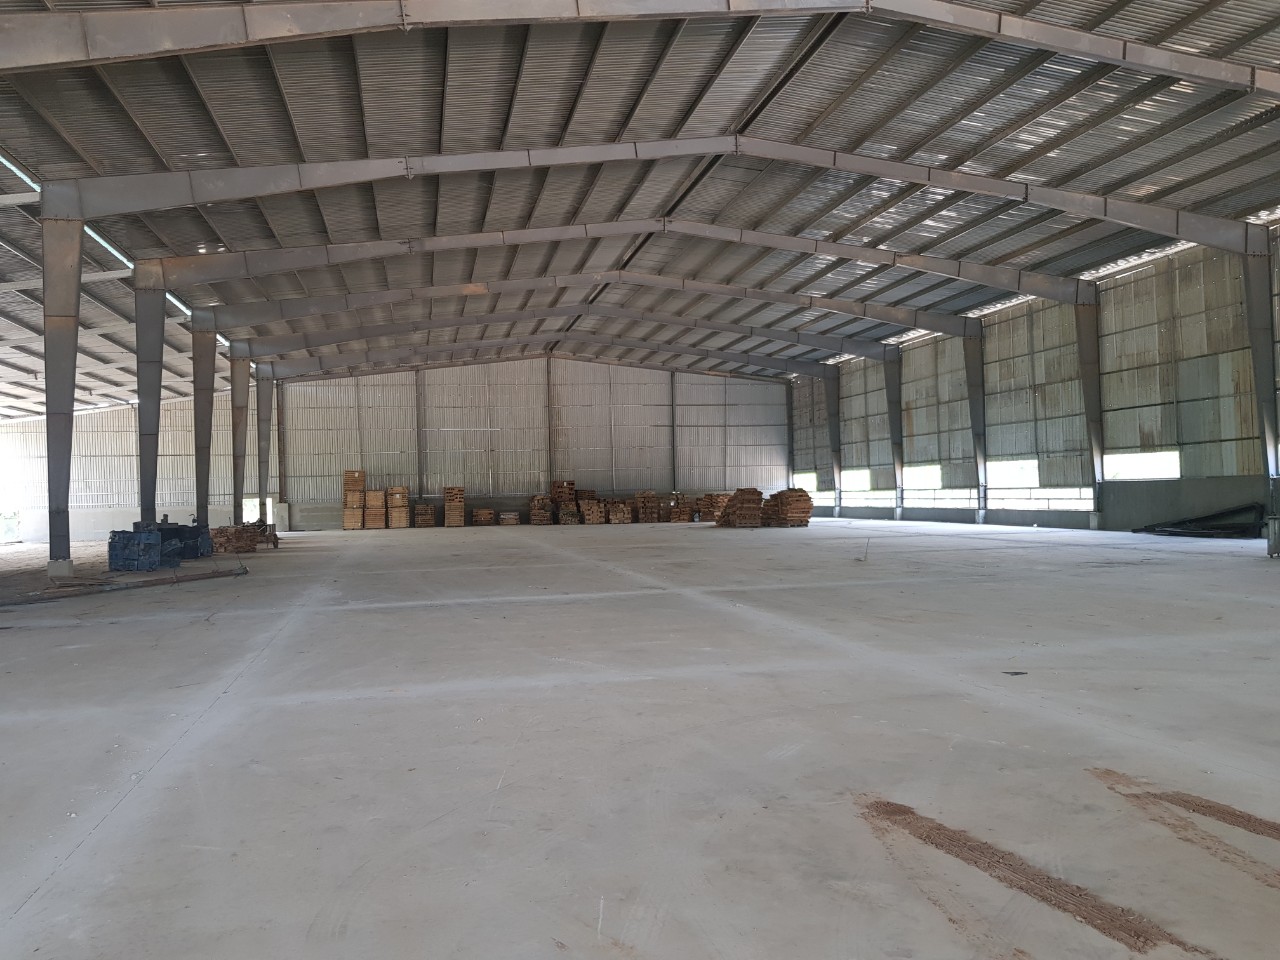 Cho thuê xưởng 4500m2 KV đất 10,000m2 mới xây ở TP Tây Ninh